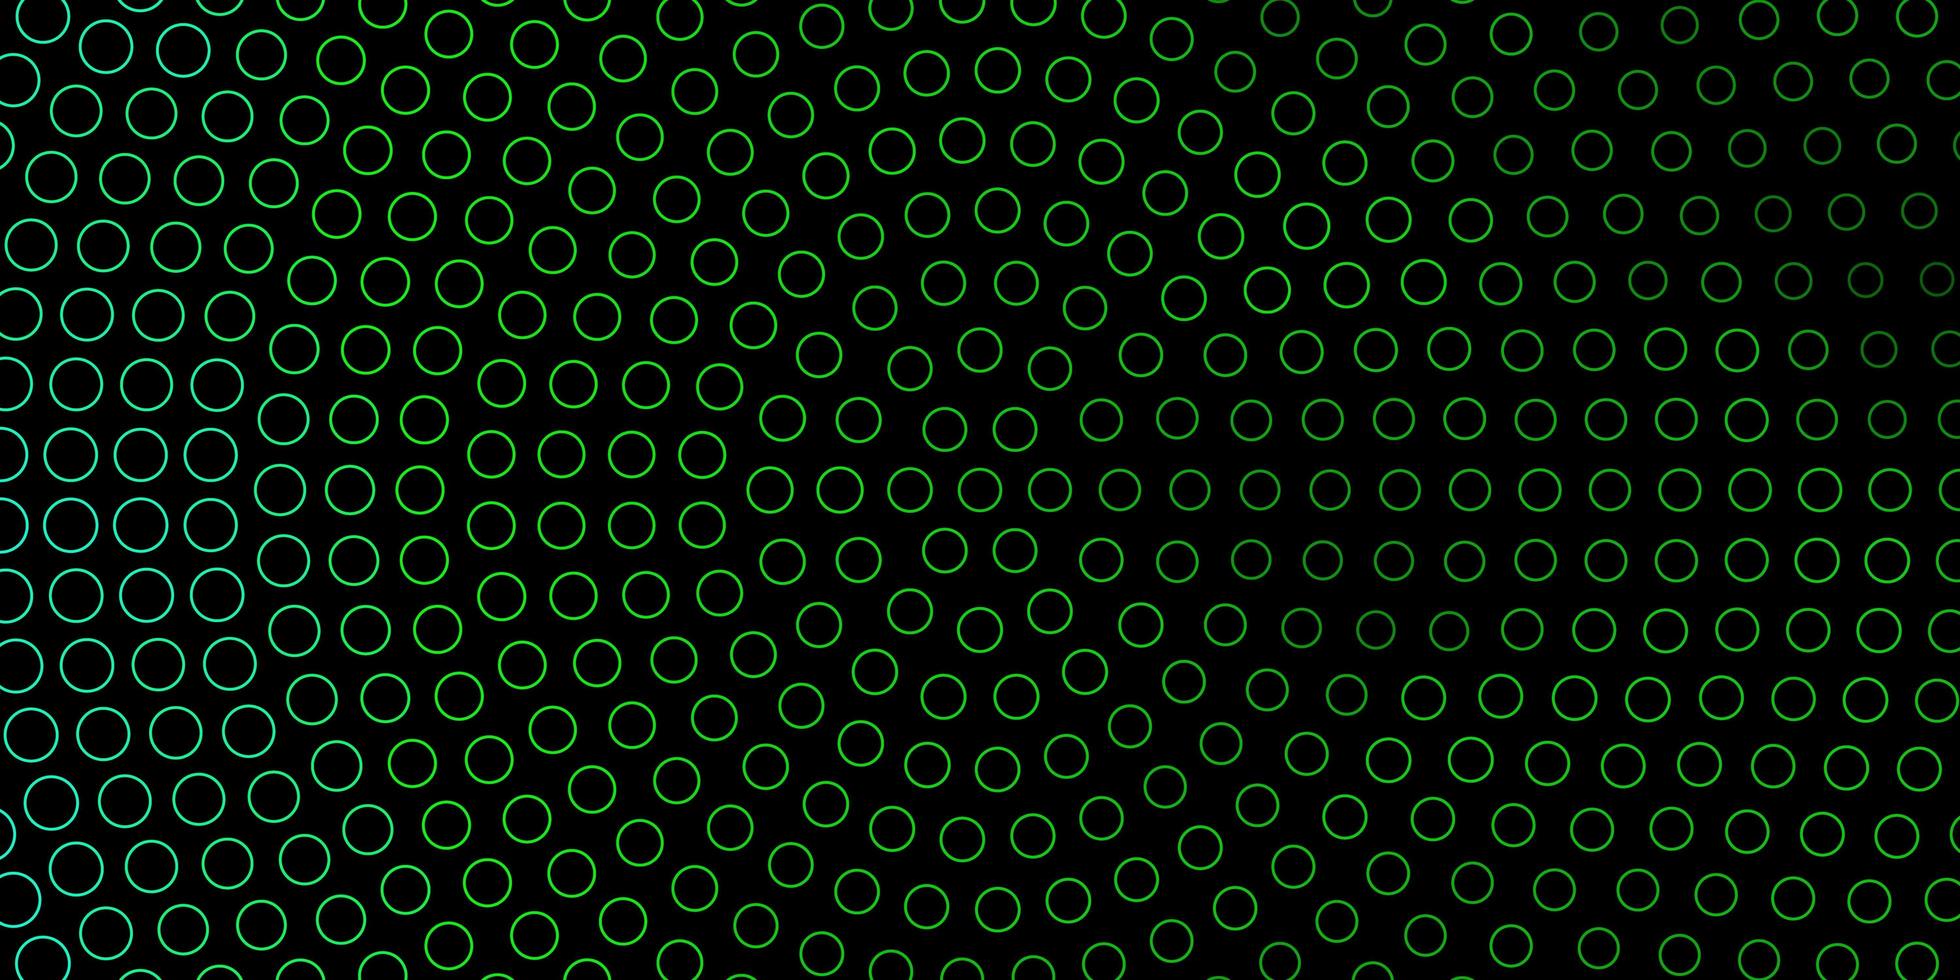 textura de vector verde oscuro con círculos brillo ilustración abstracta con gotas de colores nueva plantilla para su libro de marca